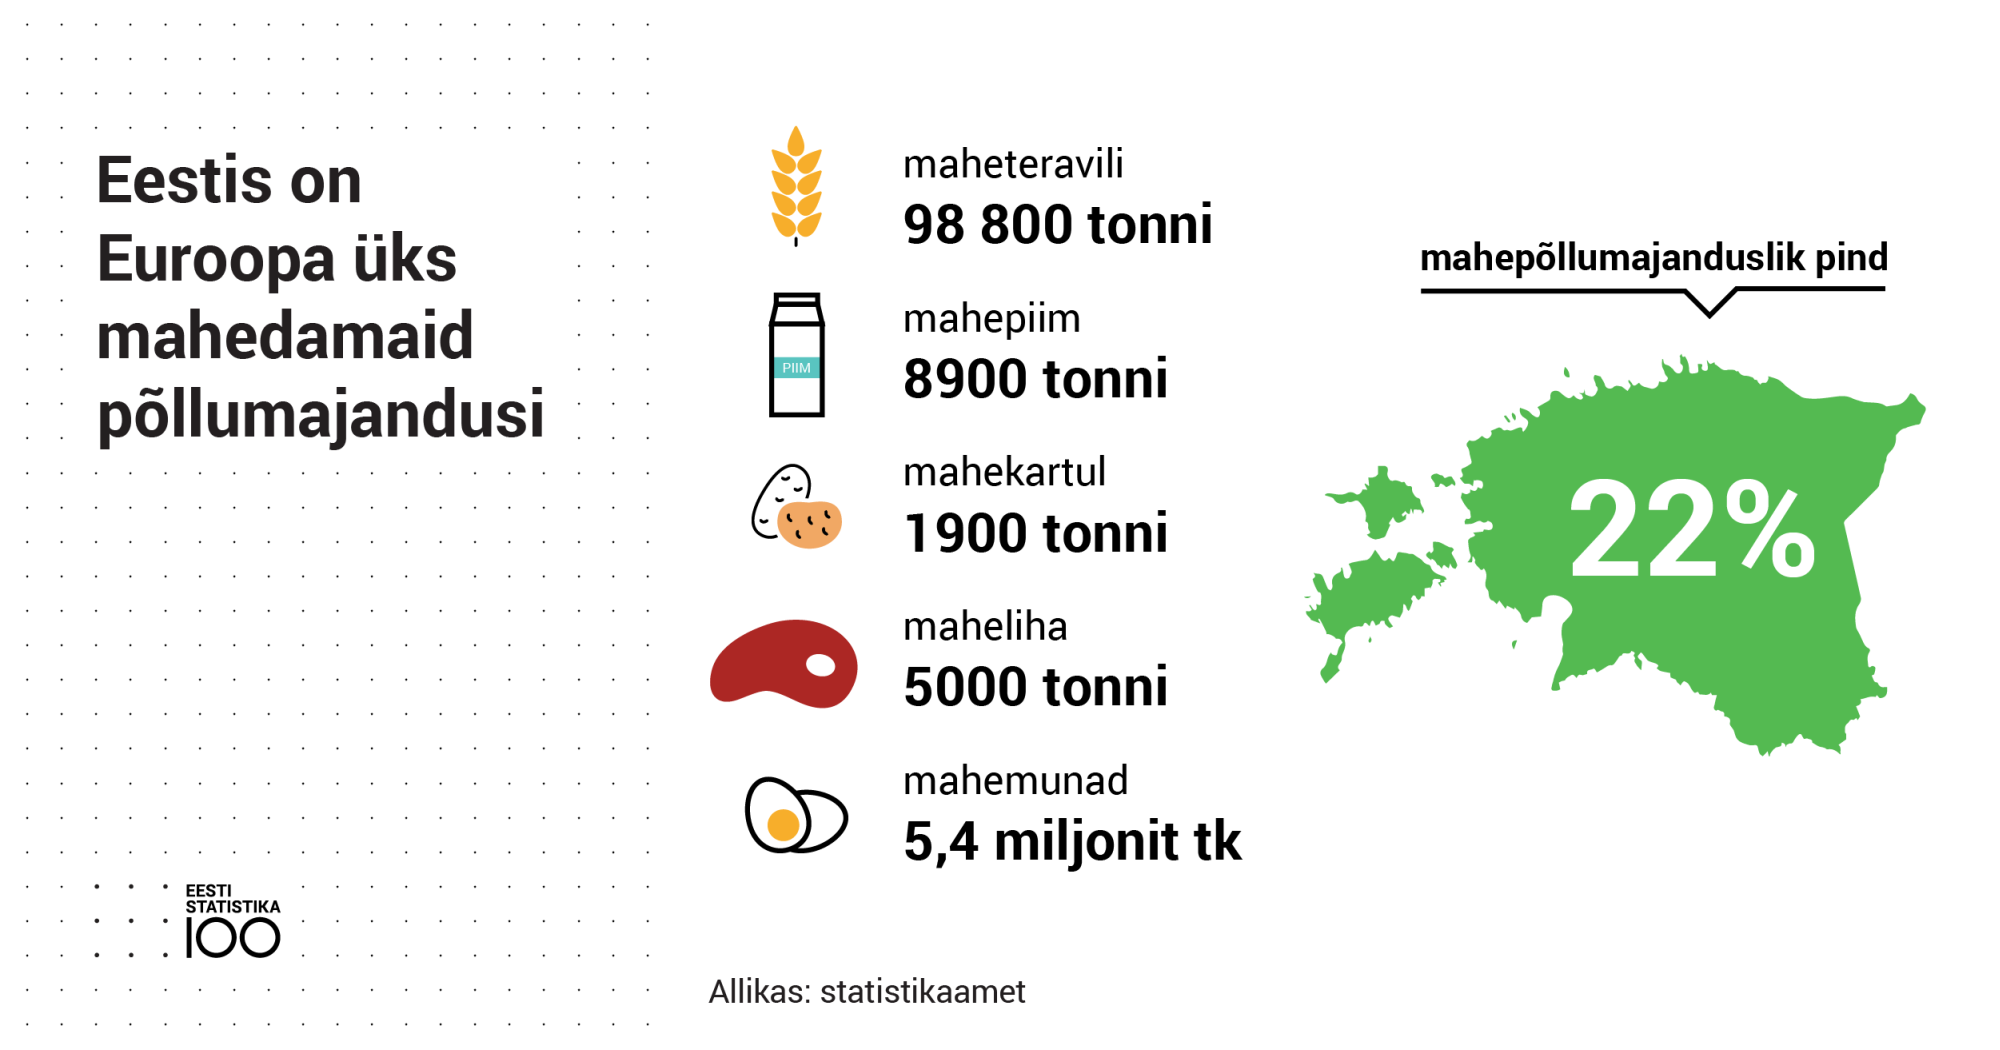 Eestis on Euroopa üks mahedamaid põllumajandusi